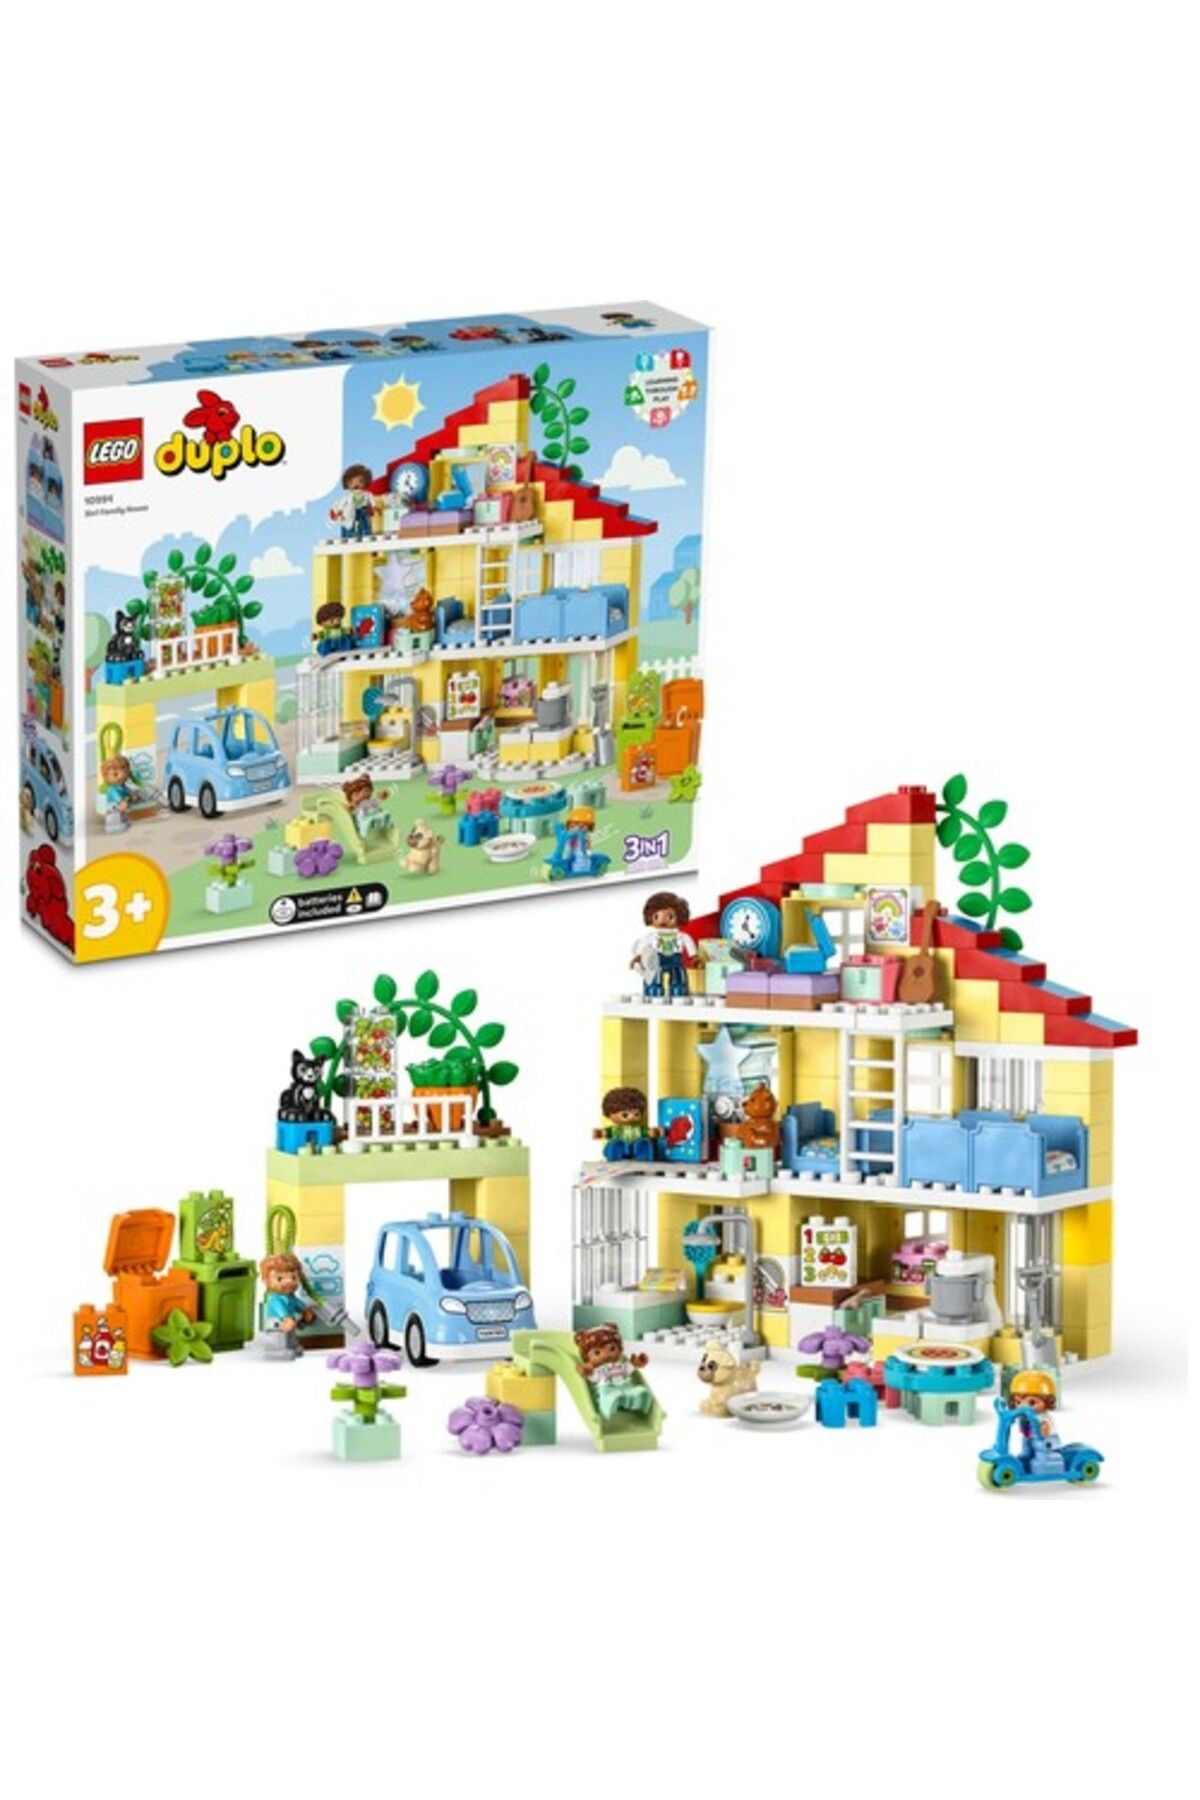 LEGO ® Duplo® Town 3'ü Bir Arada Aile Evi 10994 - 3 Yaş Ve Üzeri Çocuklar Için Yaratıcı Oyunca